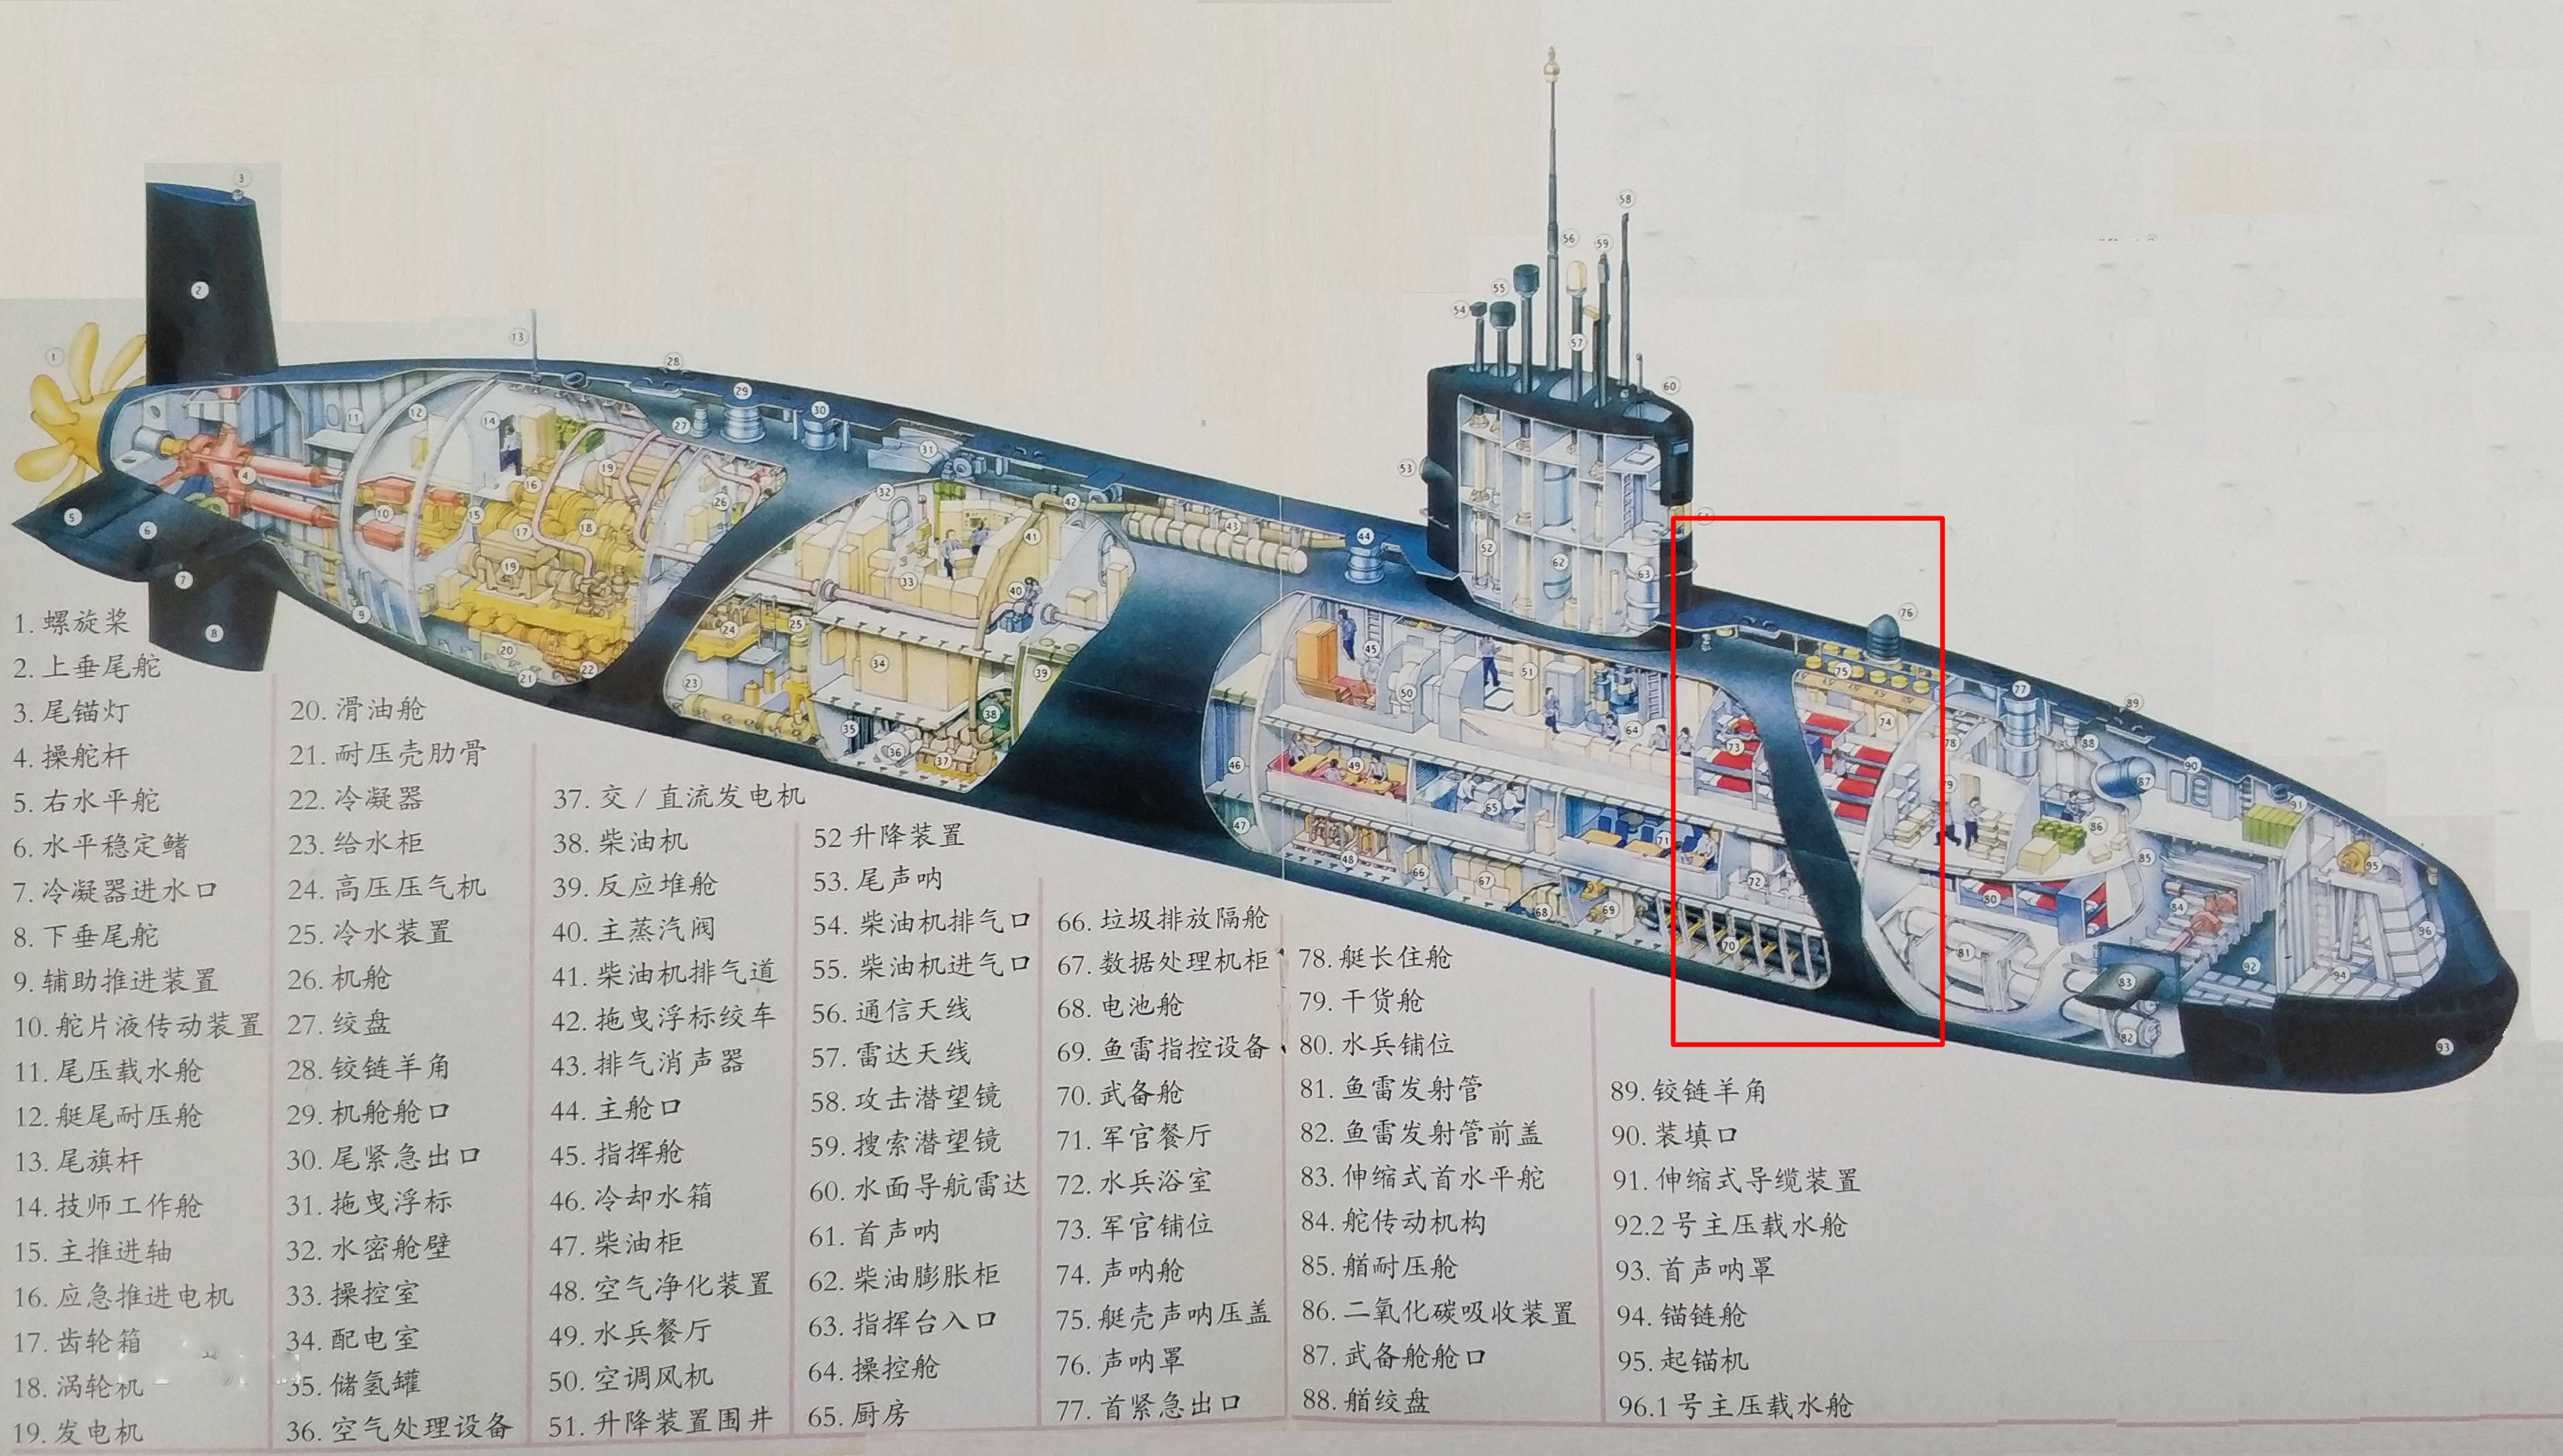 不懈号核潜艇内部图以及发生事故的舱室